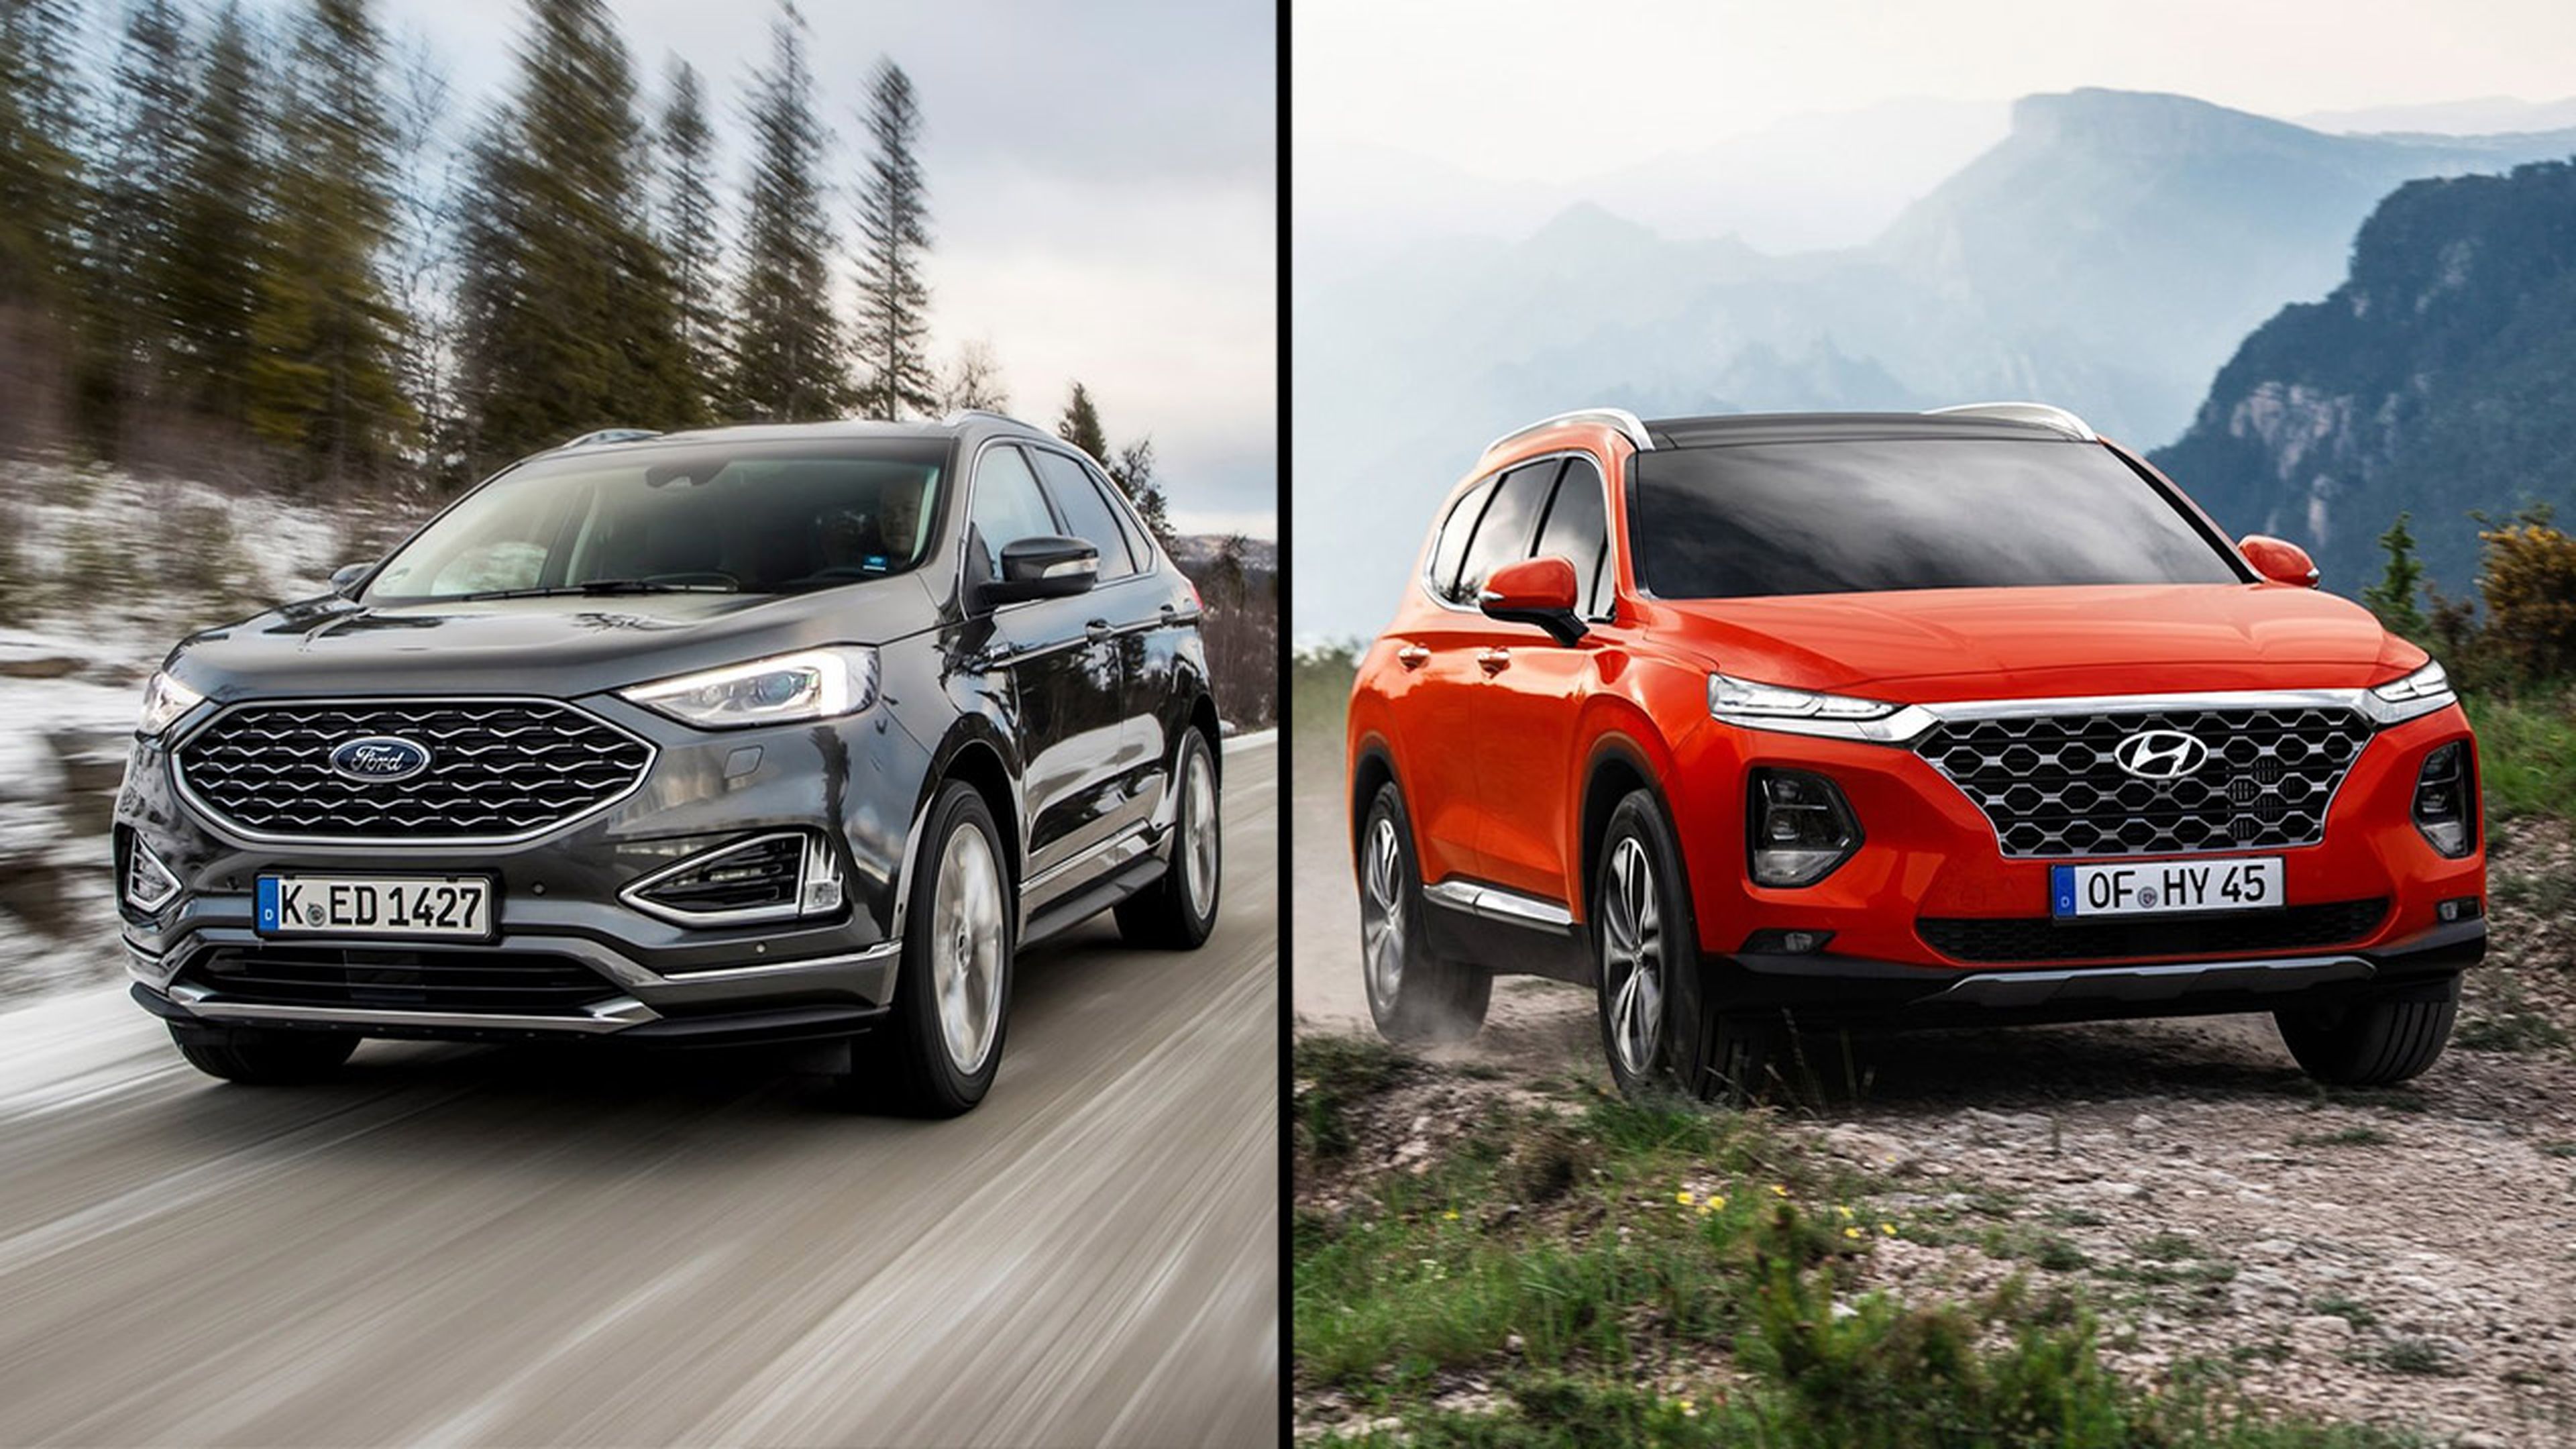 Ford Edge vs Hyundai Santa Fe